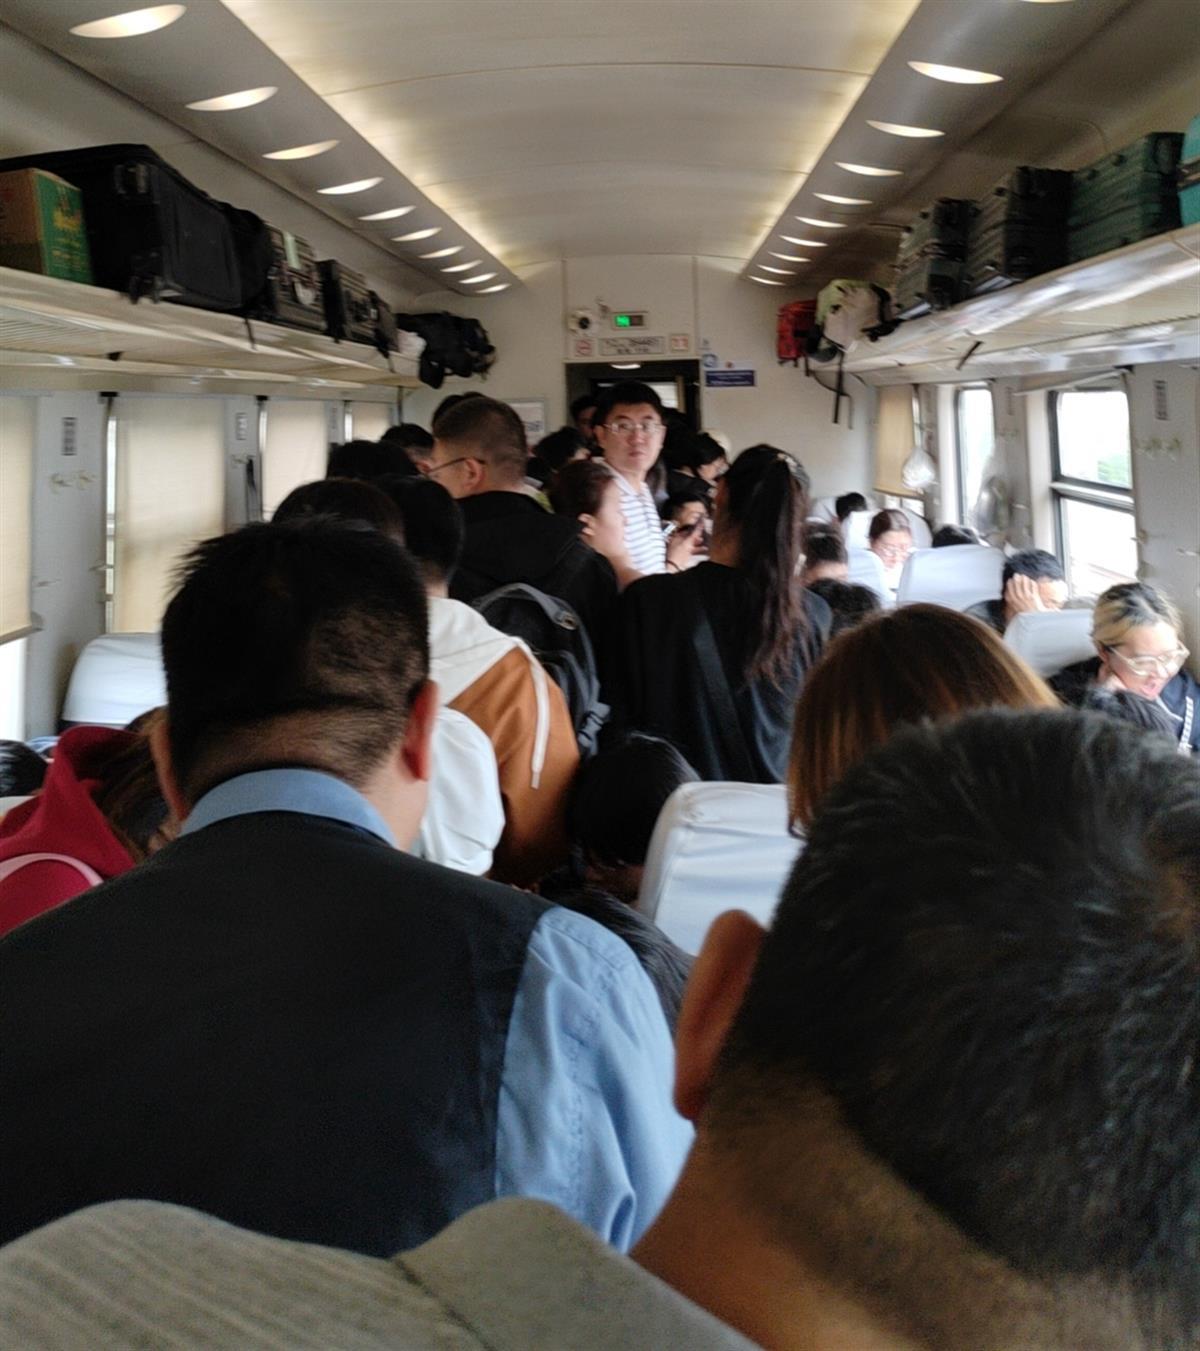 k554火车12车厢座位图图片